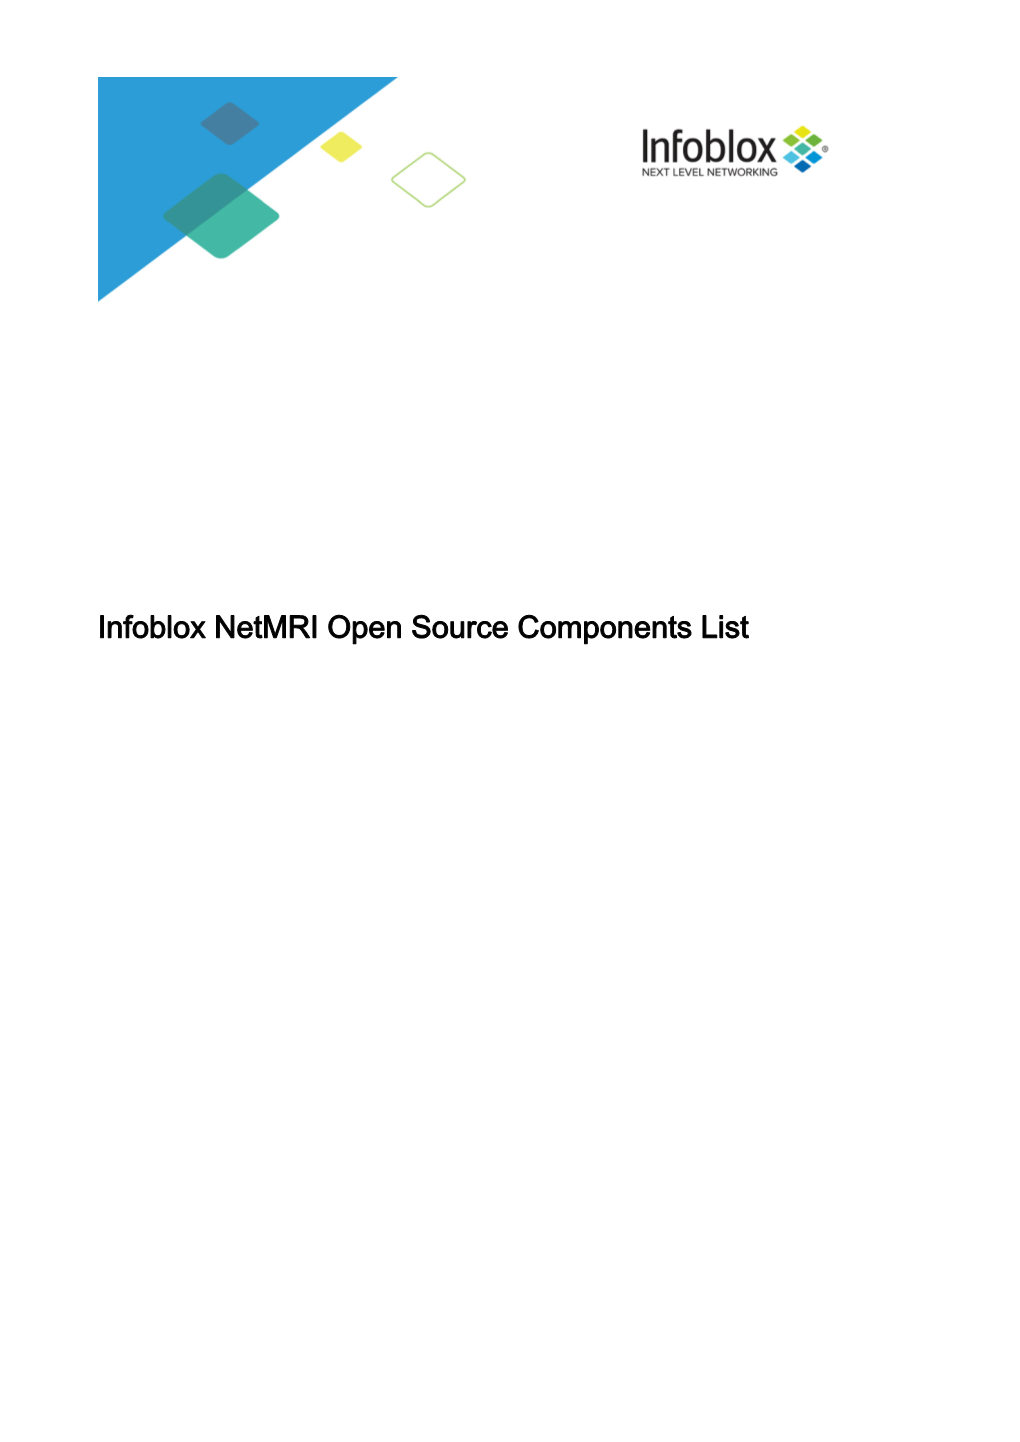 Infoblox Netmri Open Source Components List Infoblox Netmri Open Source Components List